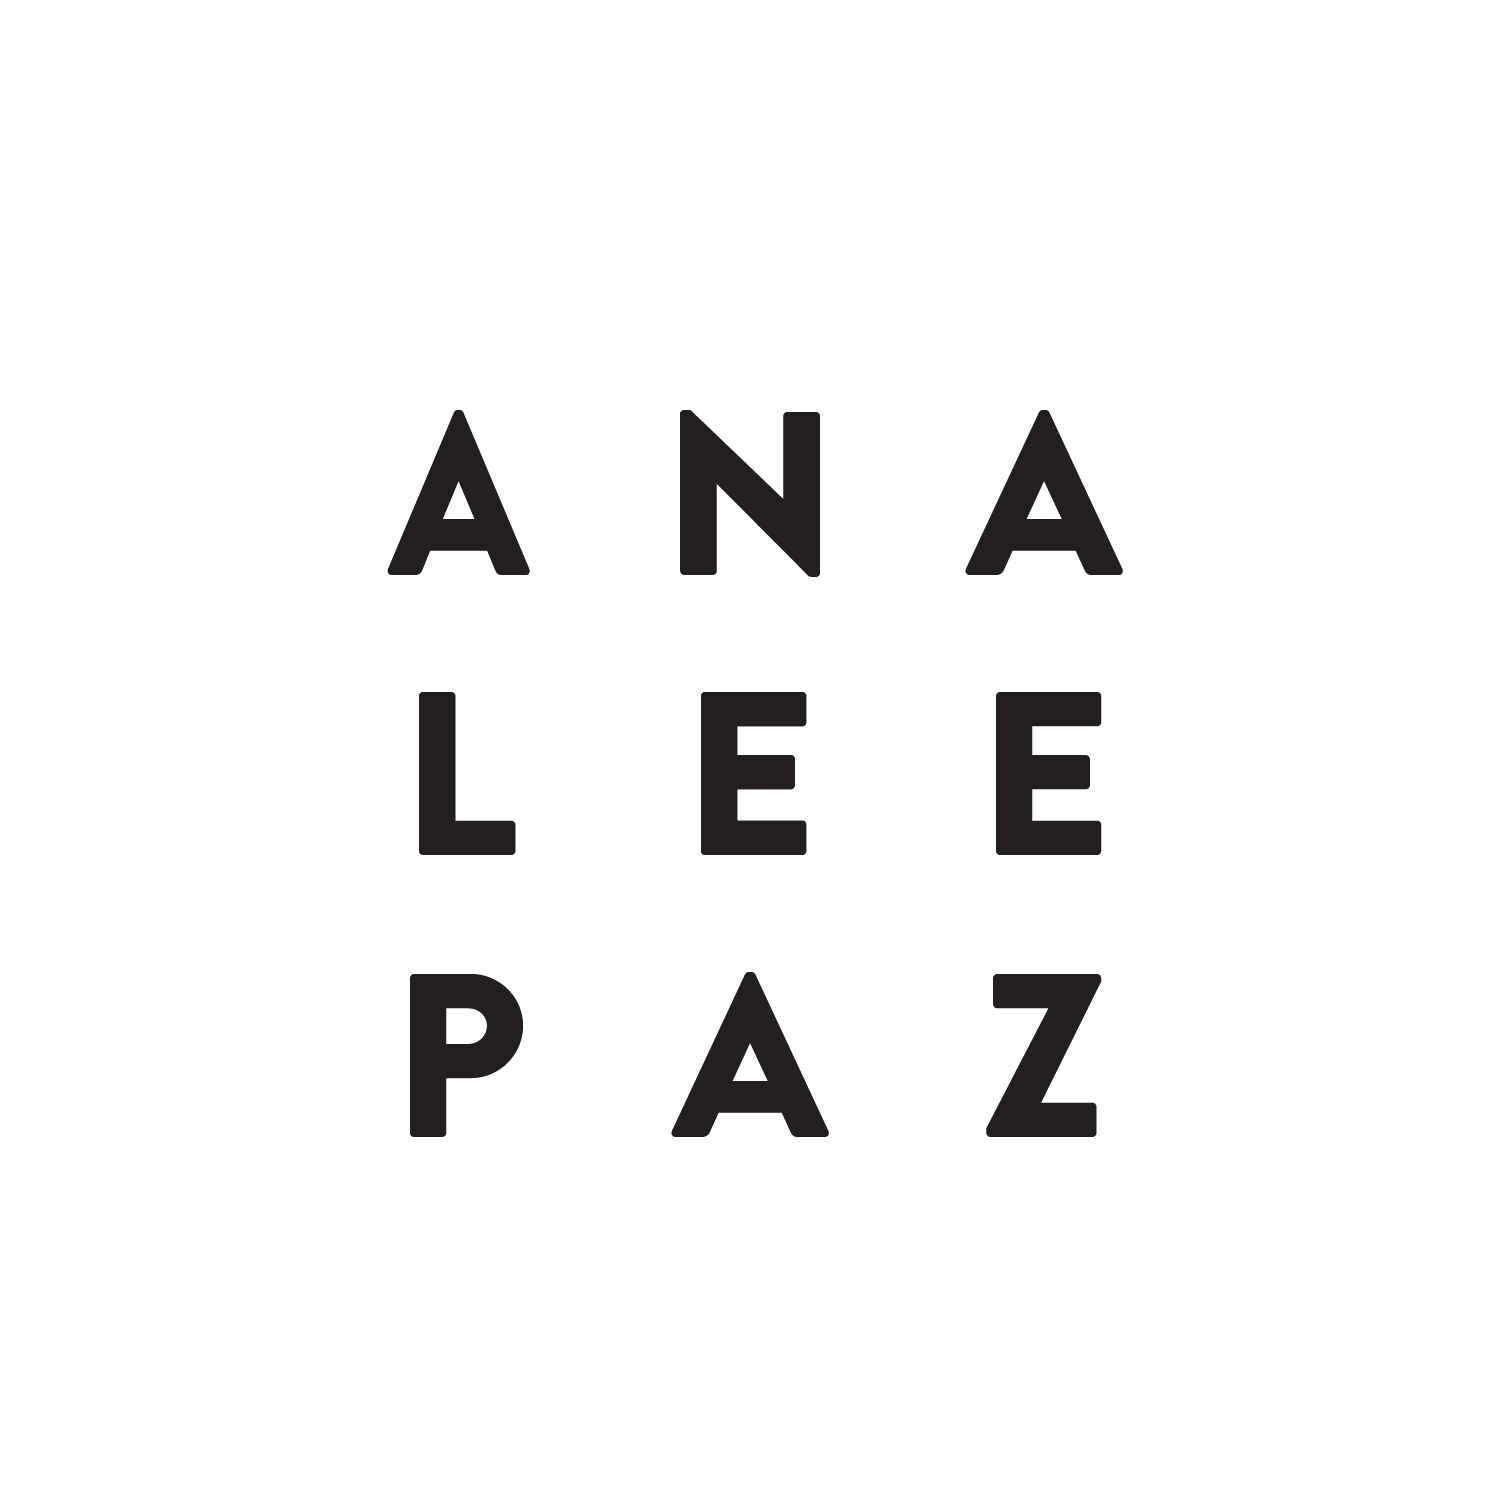 Analee Paz